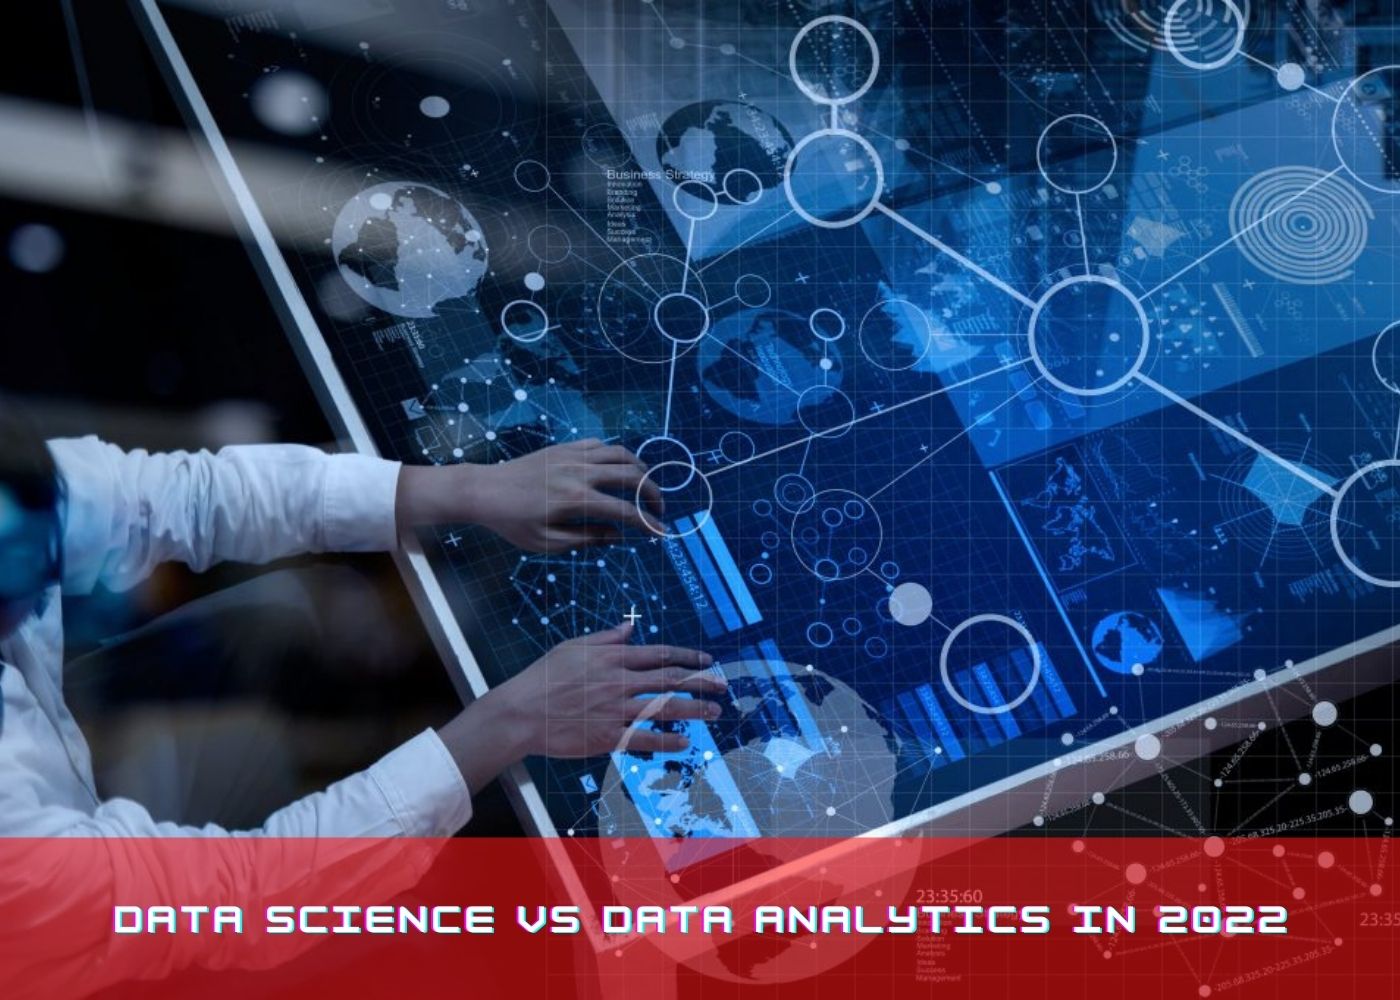 Data science vs Data analytics in 2023